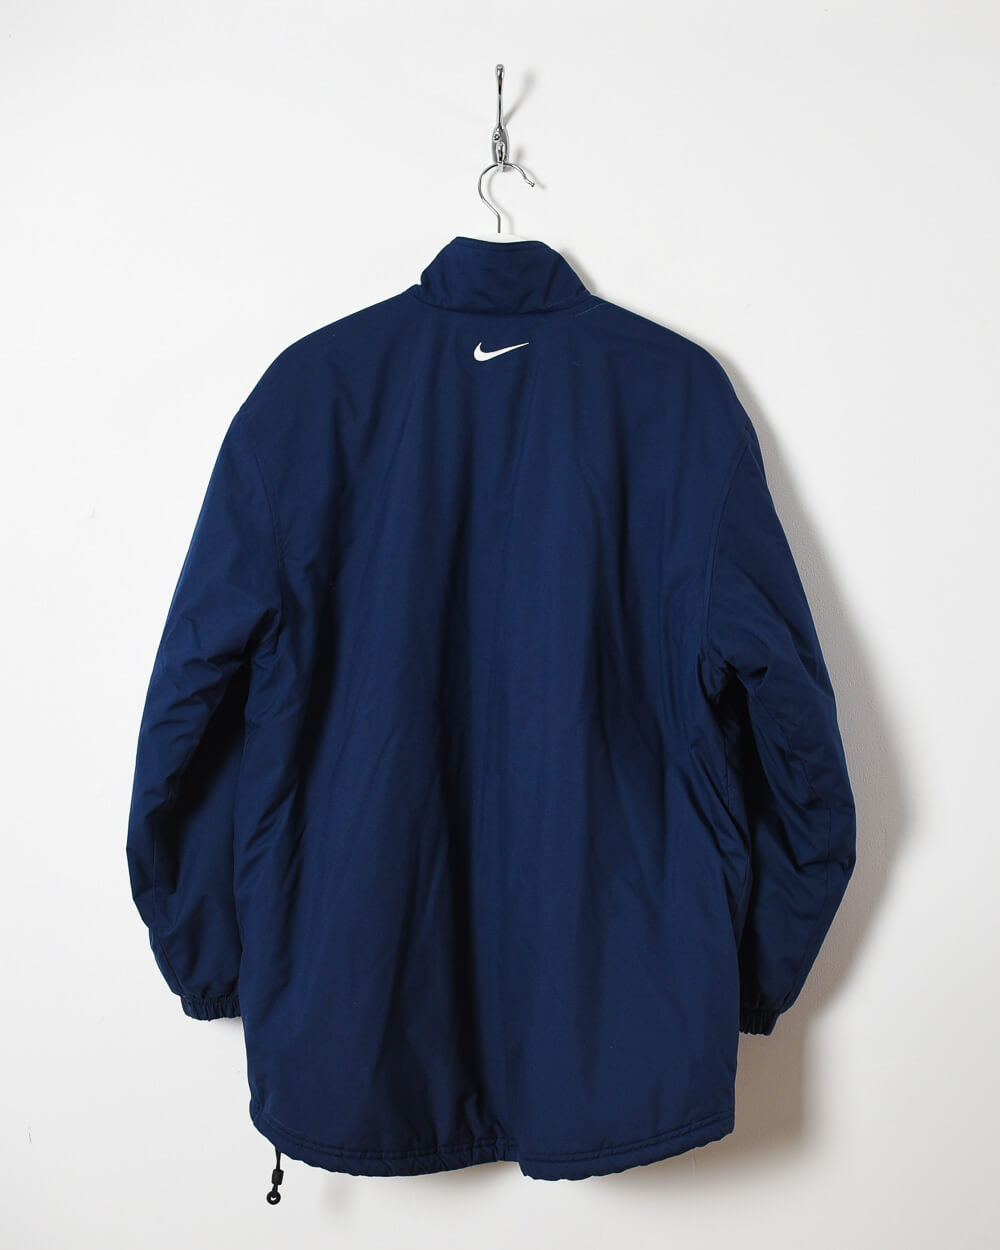 Navy Nike Winter Coat -  Small